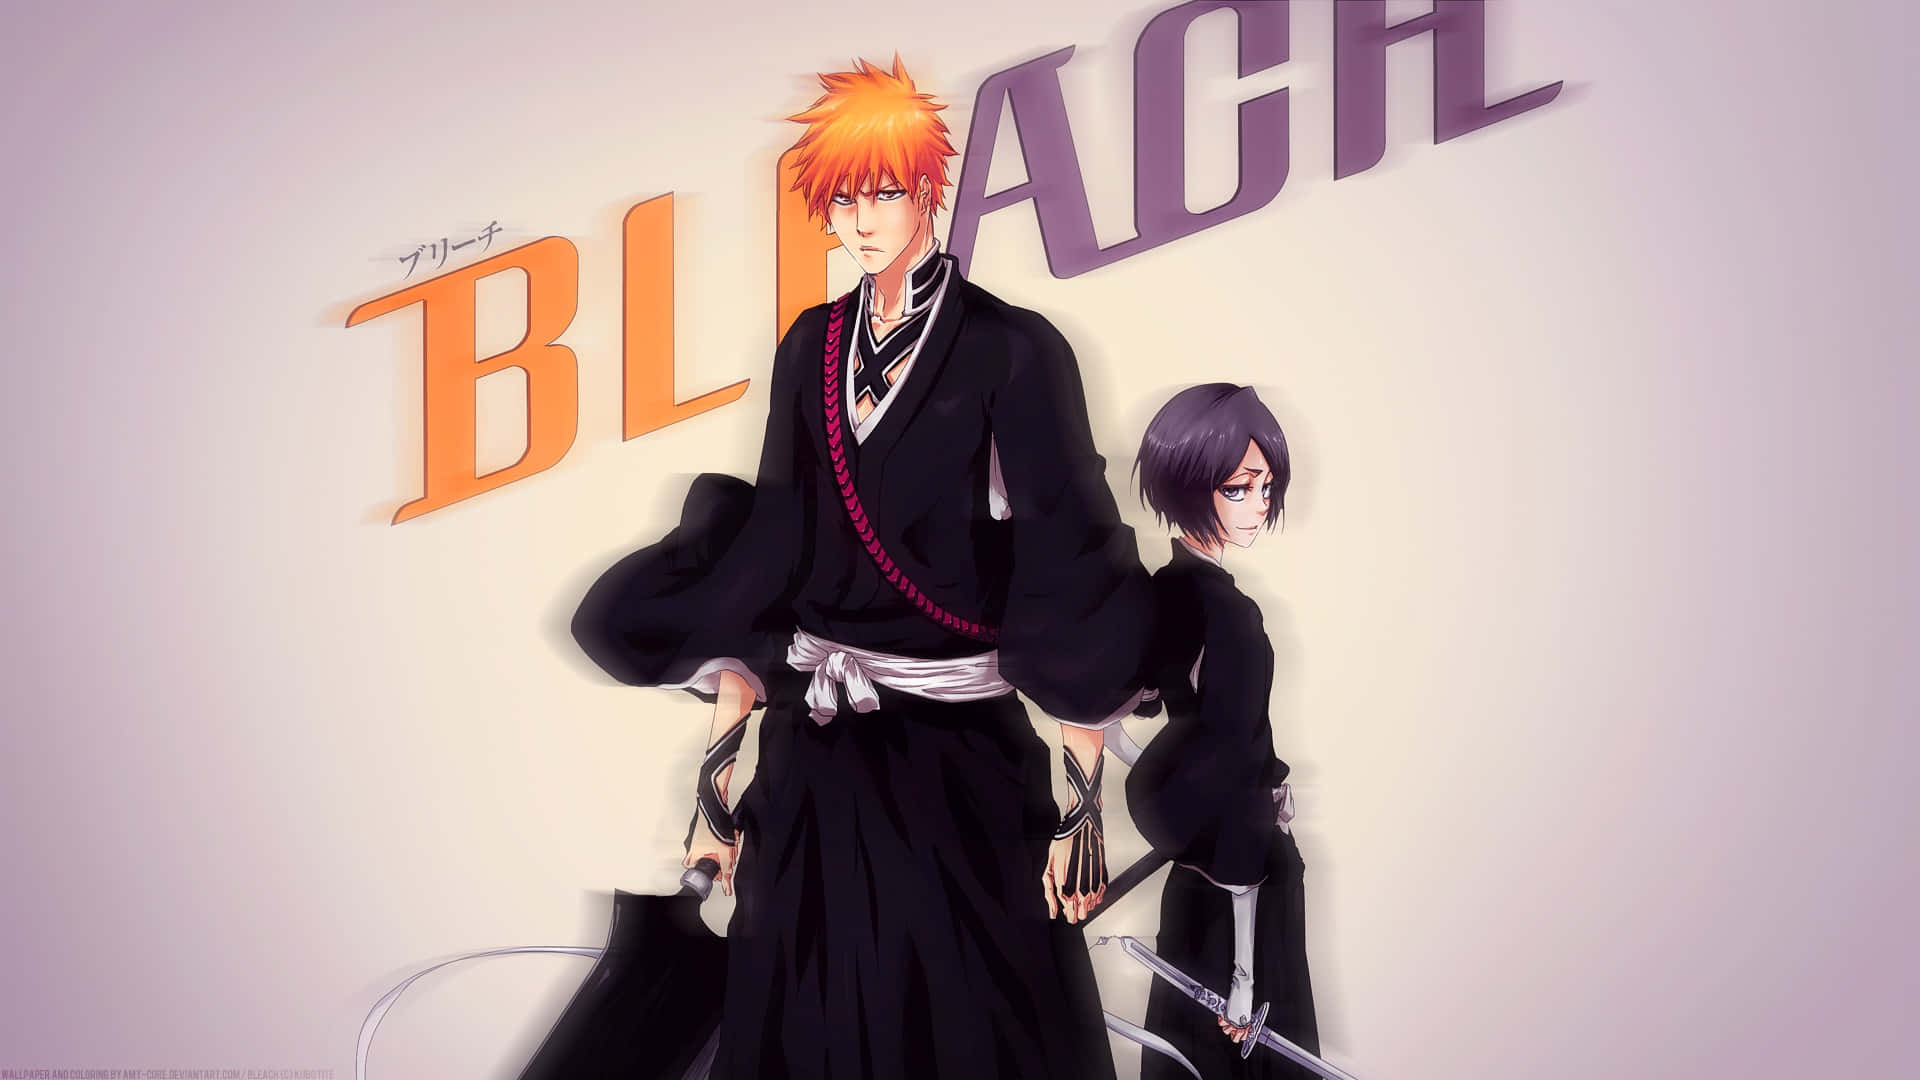 Bleachen Sort Anime-karakter Med Et Sværd Wallpaper